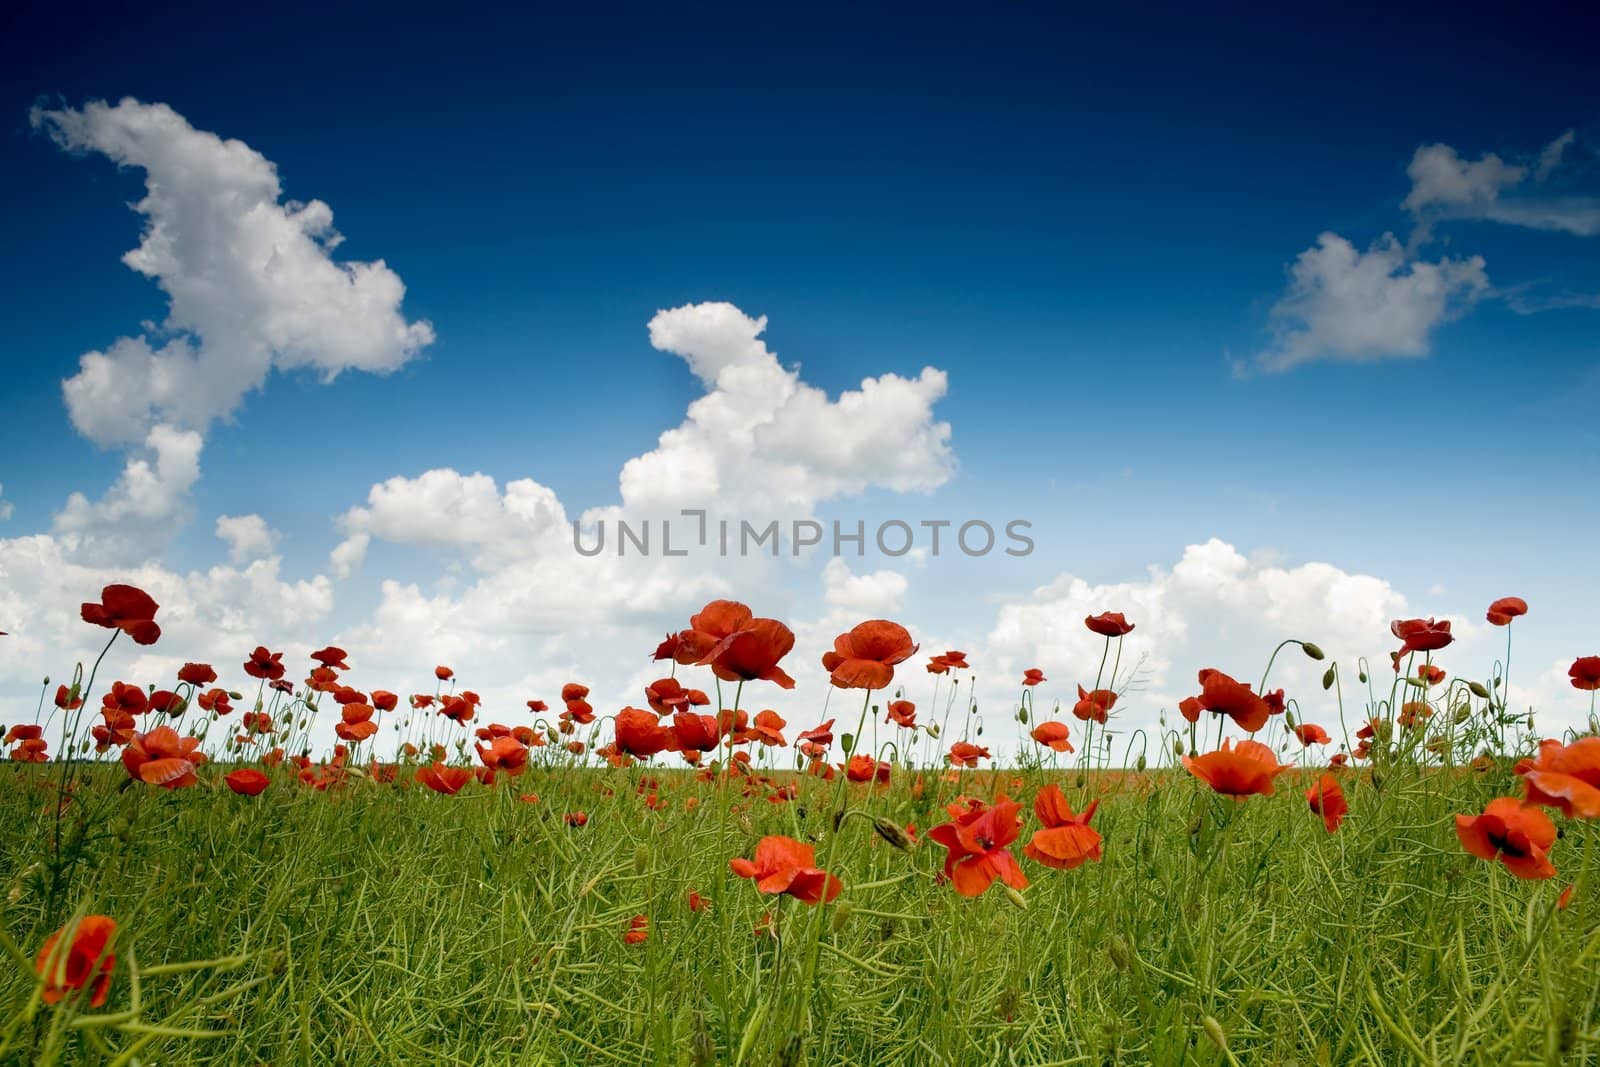 An image of poppy-field